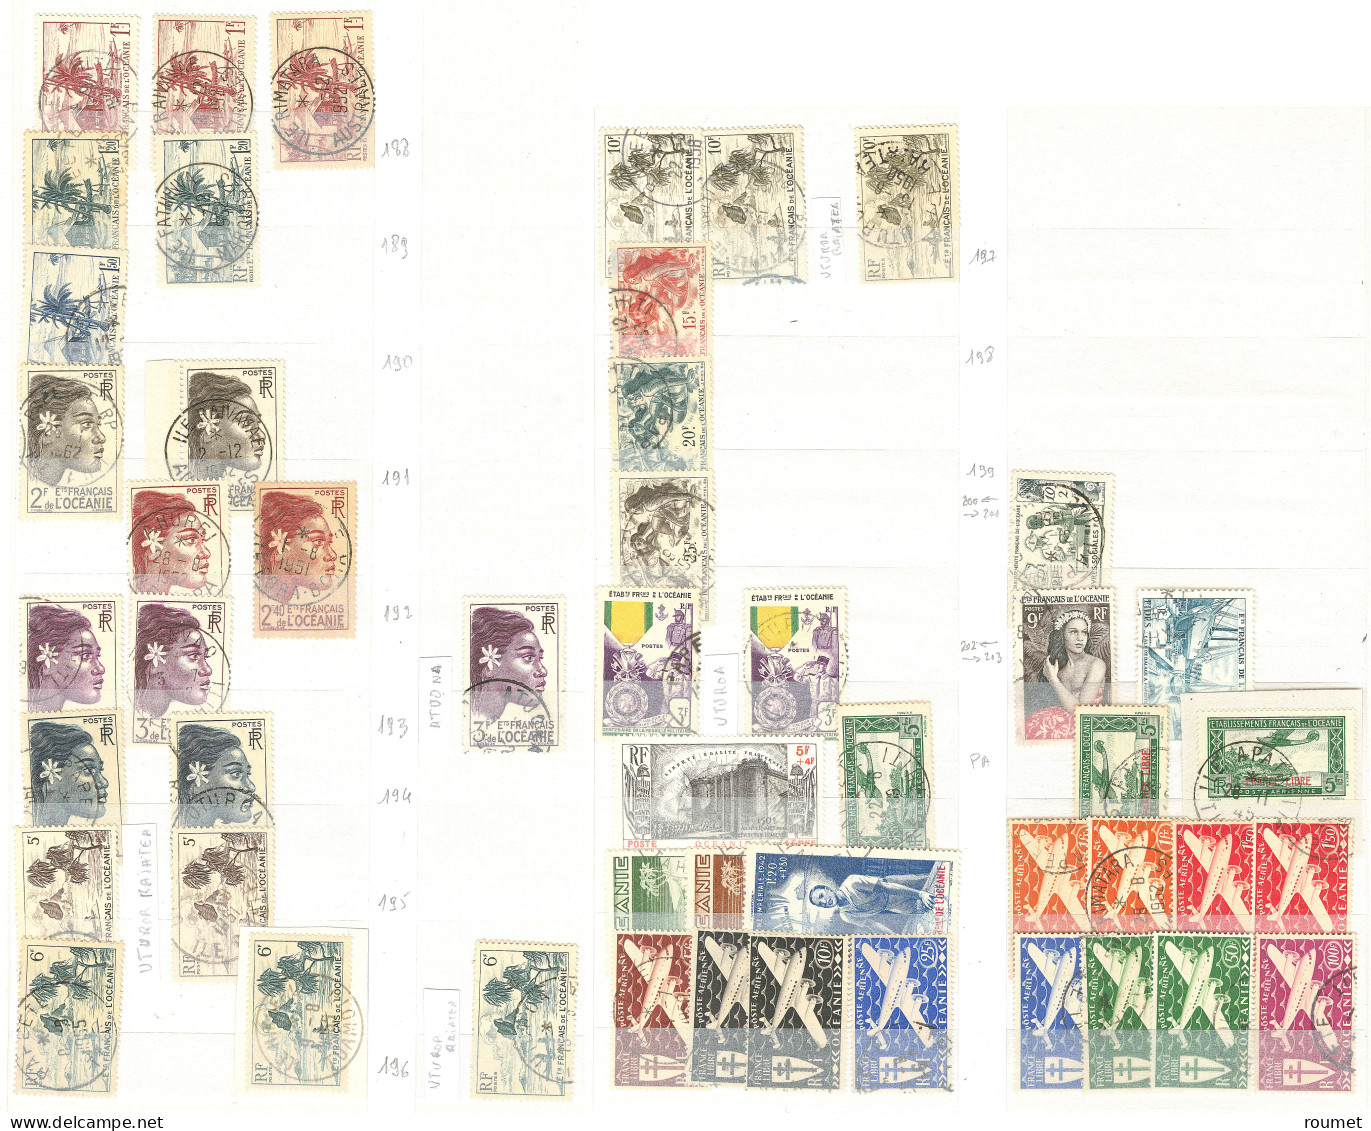 Collection. Océanie 1913-1956 (Poste, PA), nombreuses obl choisies de petits bureaux entre Huahine et Uturoa . - TB